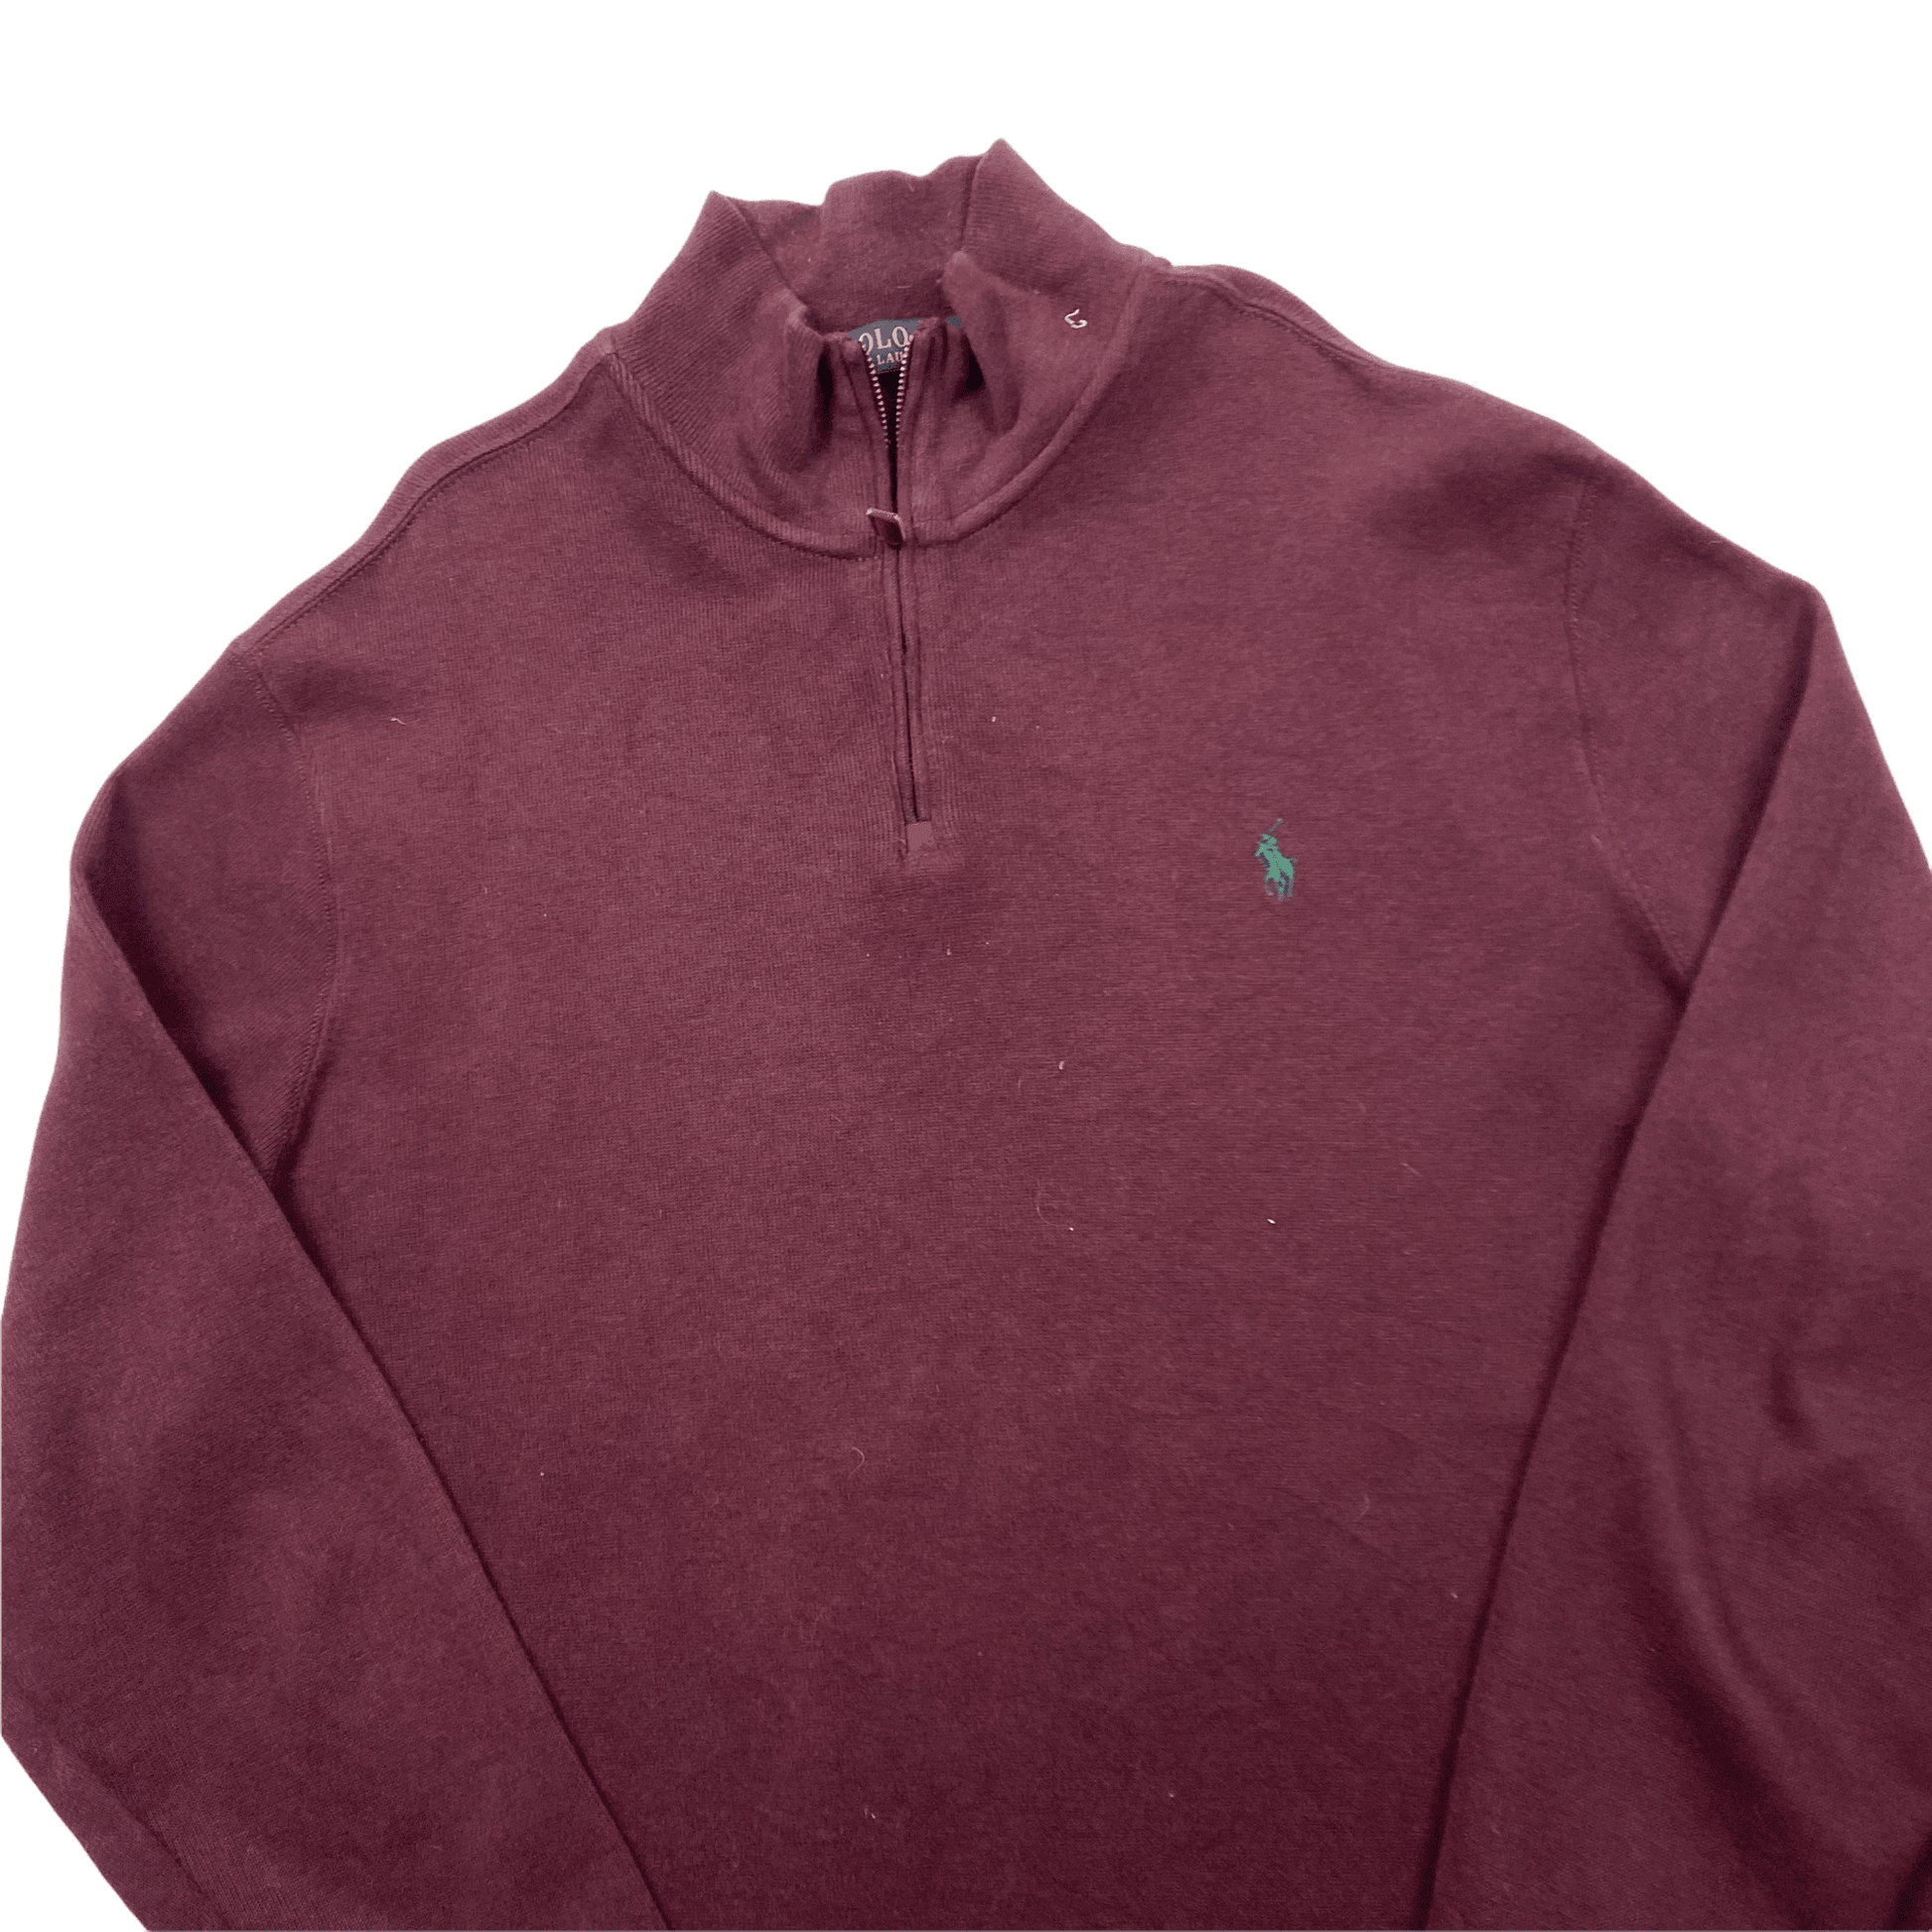 Vintage 90s Burgundy Polo Ralph Lauren Quarter Zip Sweatshirt - Extra Large - The Streetwear Studio